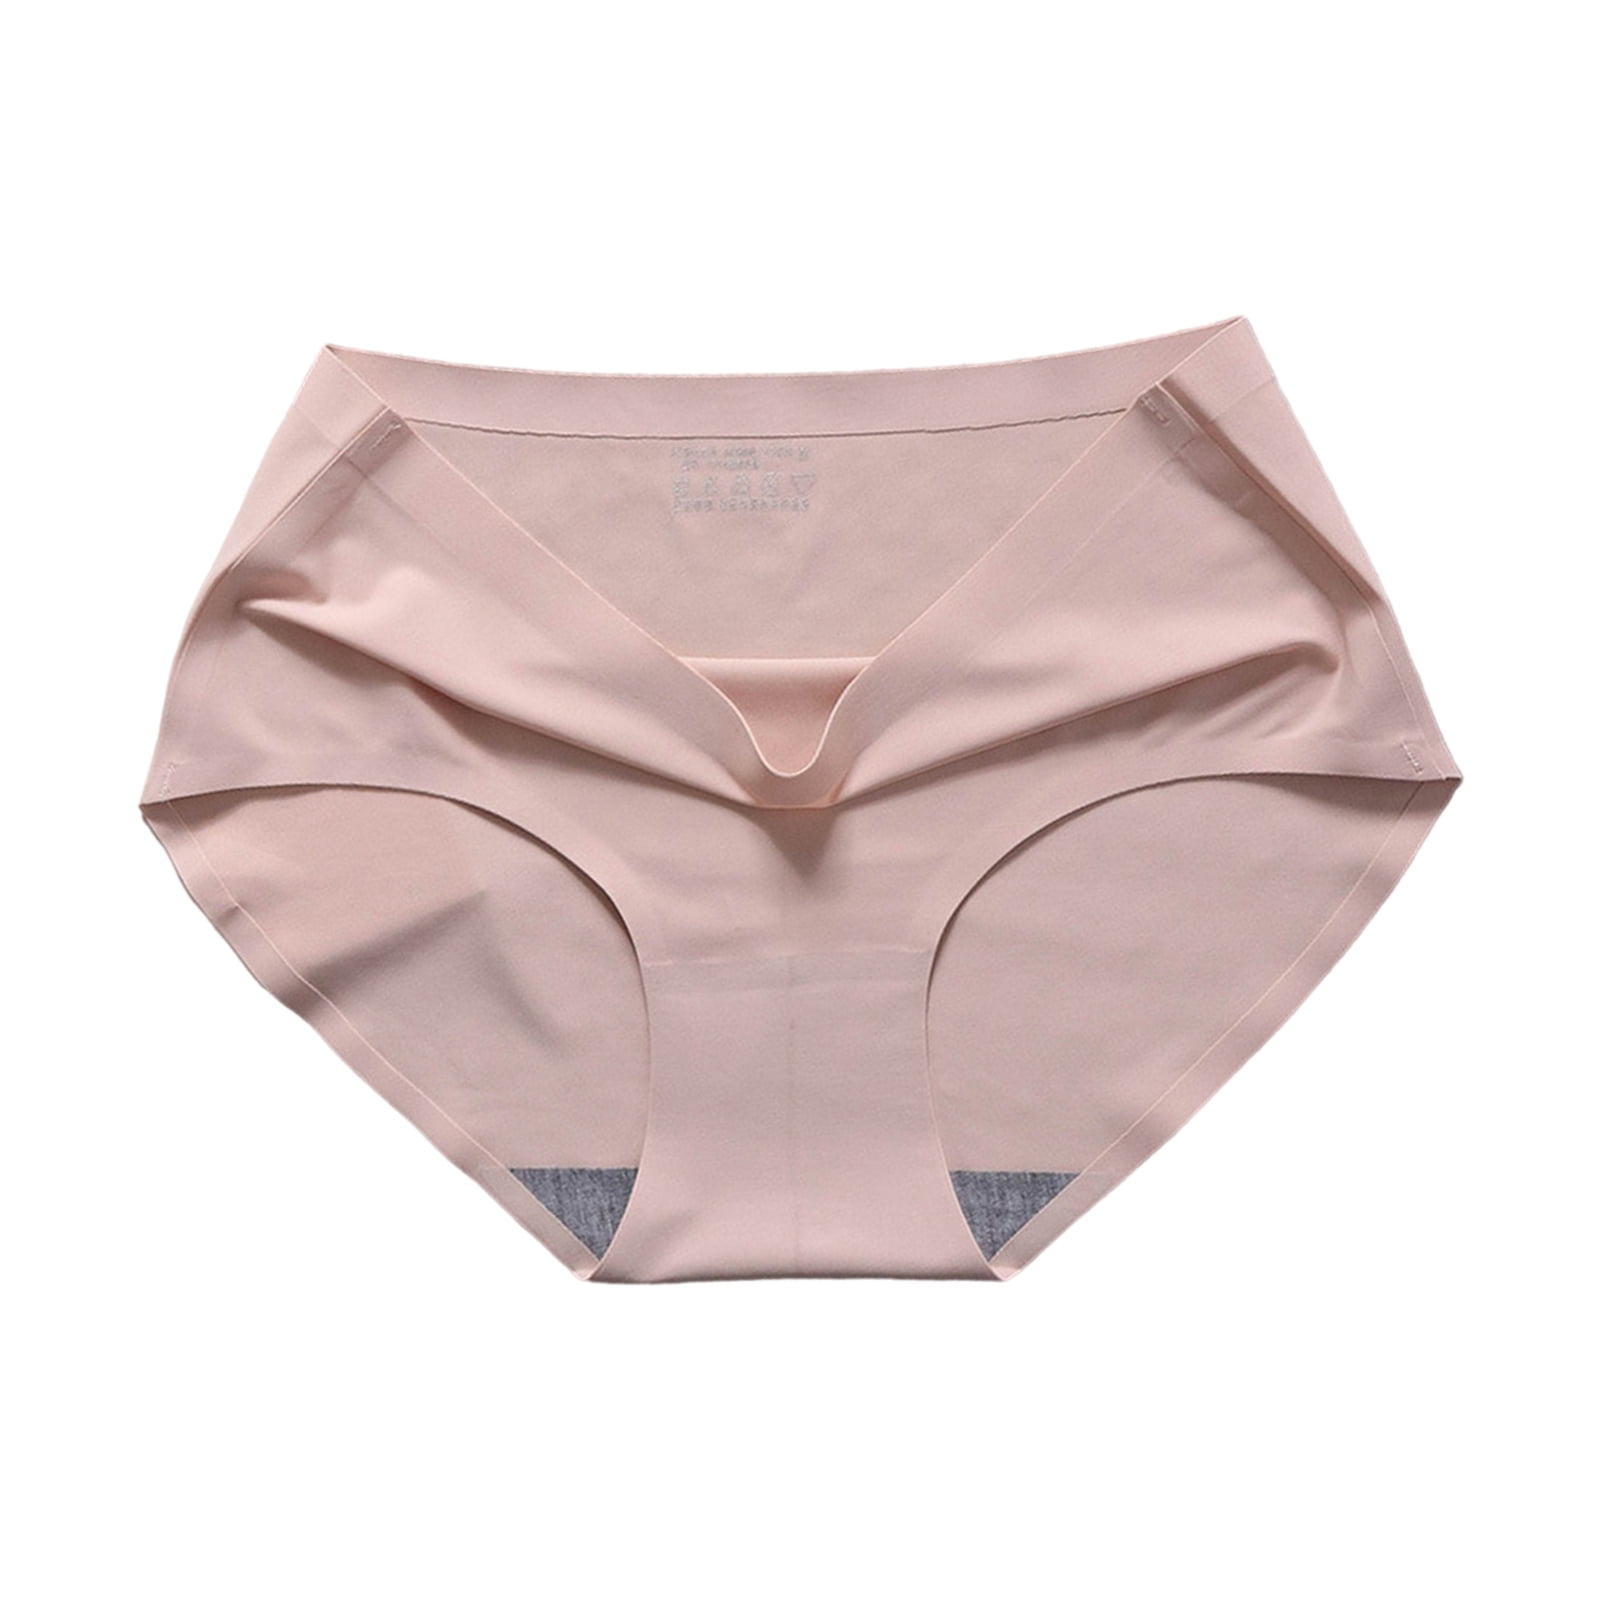 harmtty Stretch Women Briefs Exquisite Workmanship Ice-silk Mid-rise Women  Underwear Underpants for Sleeping,Pink S 